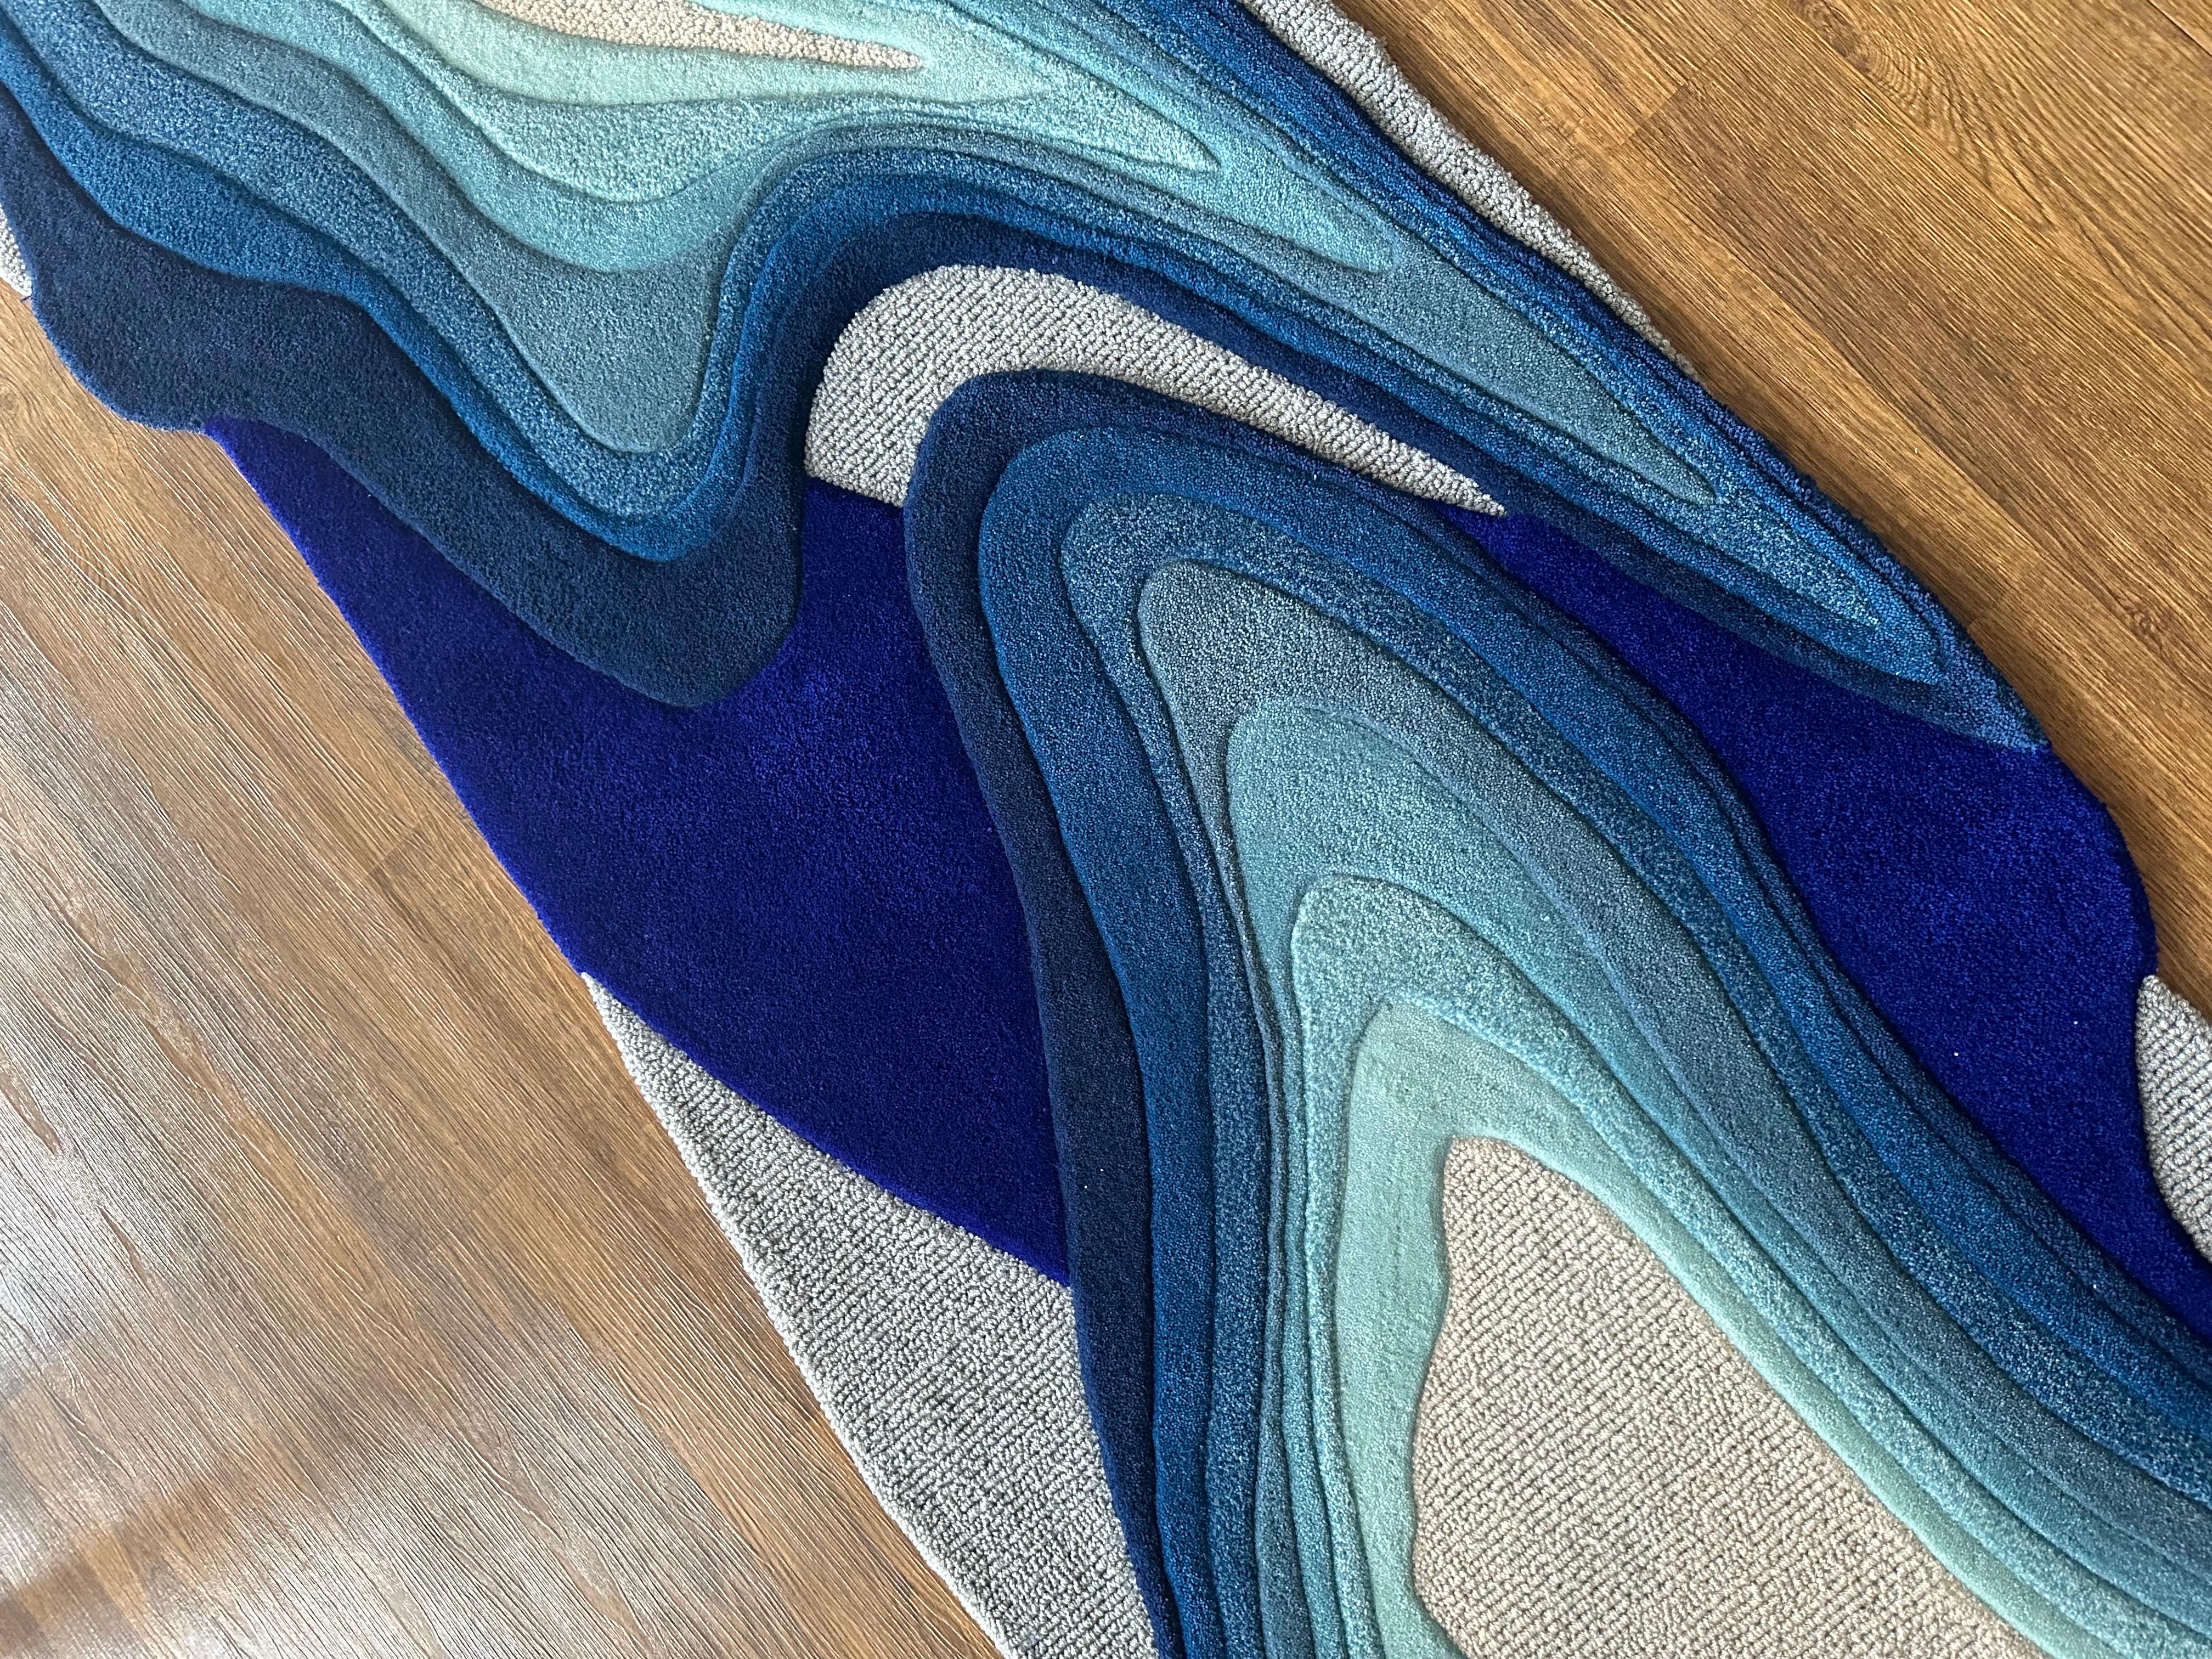 Getuftet als Langläufer mit Farbverläufen, die von Kobaltblau zu Grau übergehen, zeigt dieser moderne Teppich Ausschnitte aus der Natur - gefrorene Blasen des Abrahamsees, Meereswellen, Wasserkräusel und Eisbergformationen -, die in ein abstraktes